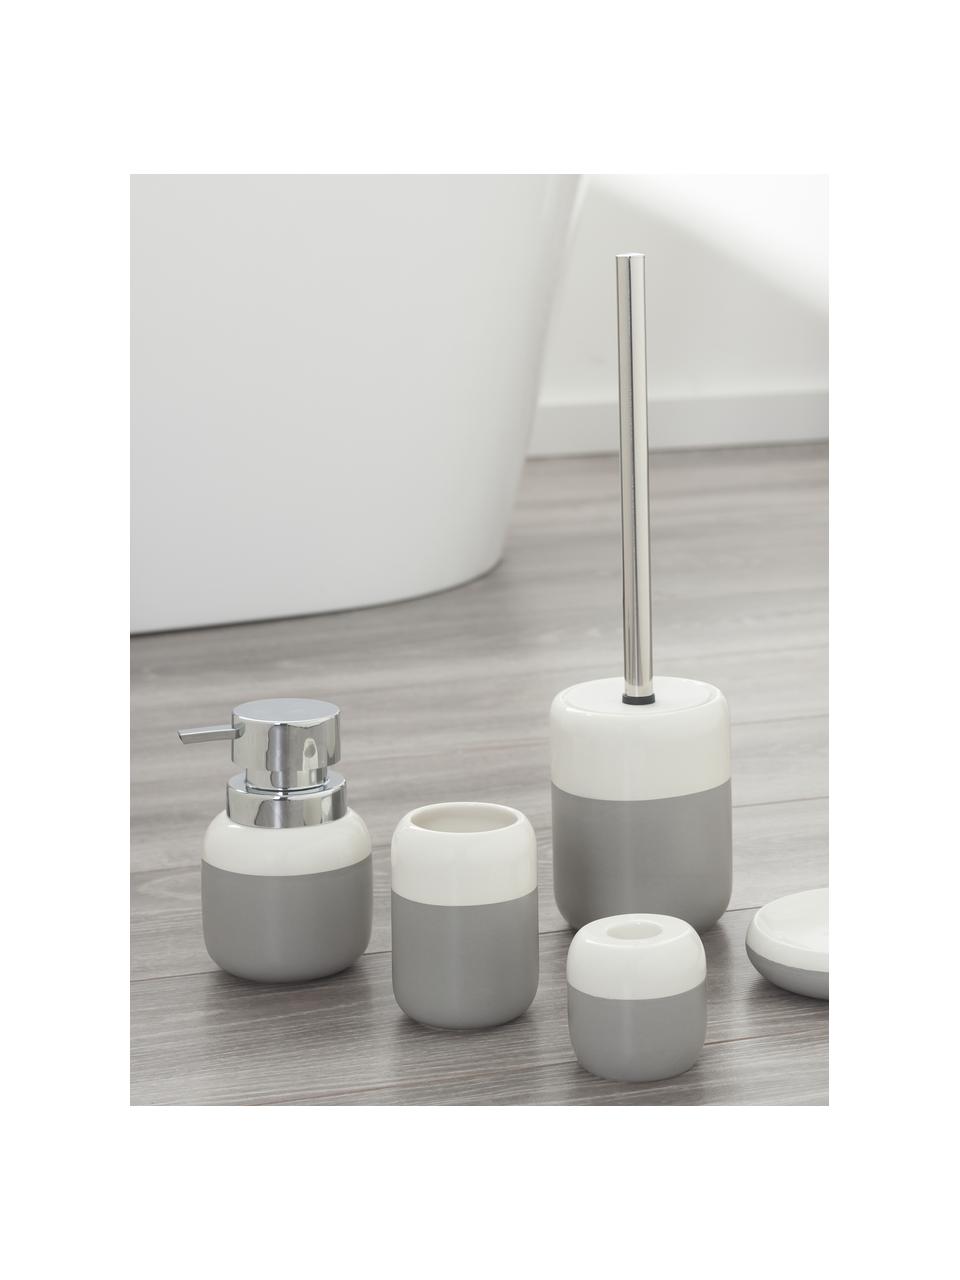 WC kartáč s nádobou z porcelánu Sphere, Nádoba: světle šedá, bílá WC kartáč: nerezová ocel, Ø 10 cm, V 38 cm